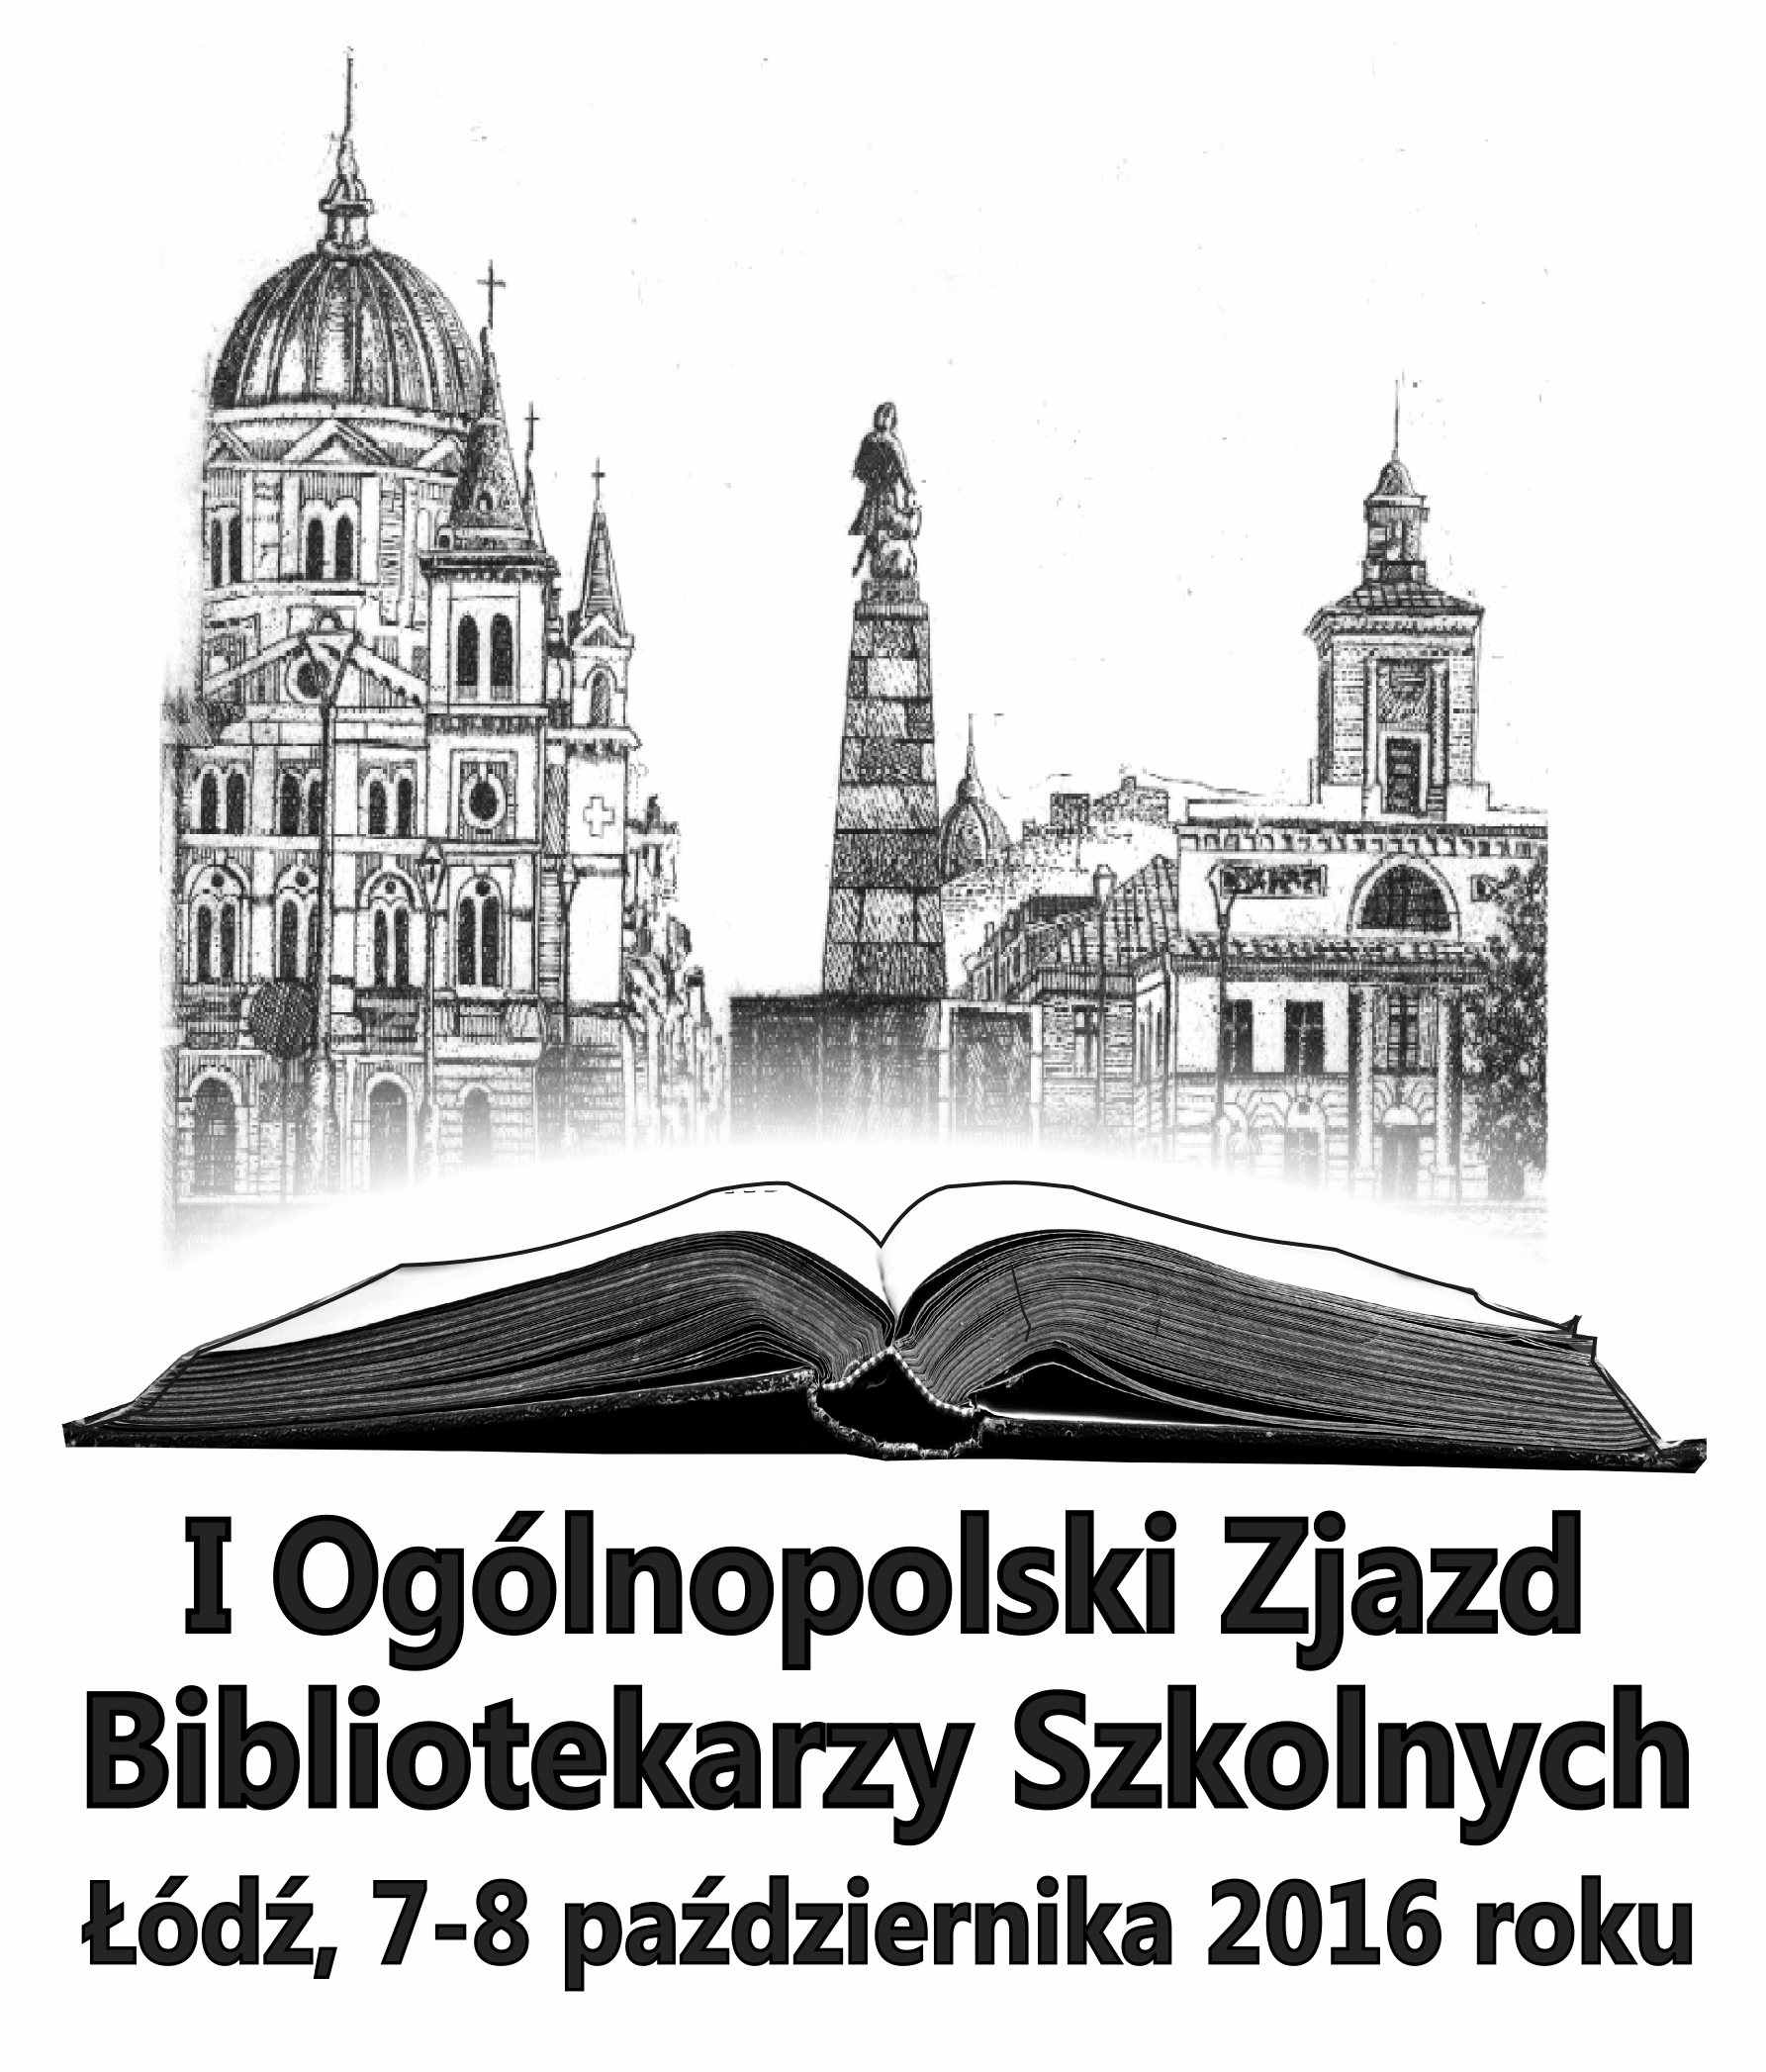 zjazd-bibliotekarzy-szkolnych-w-lodzi-logo